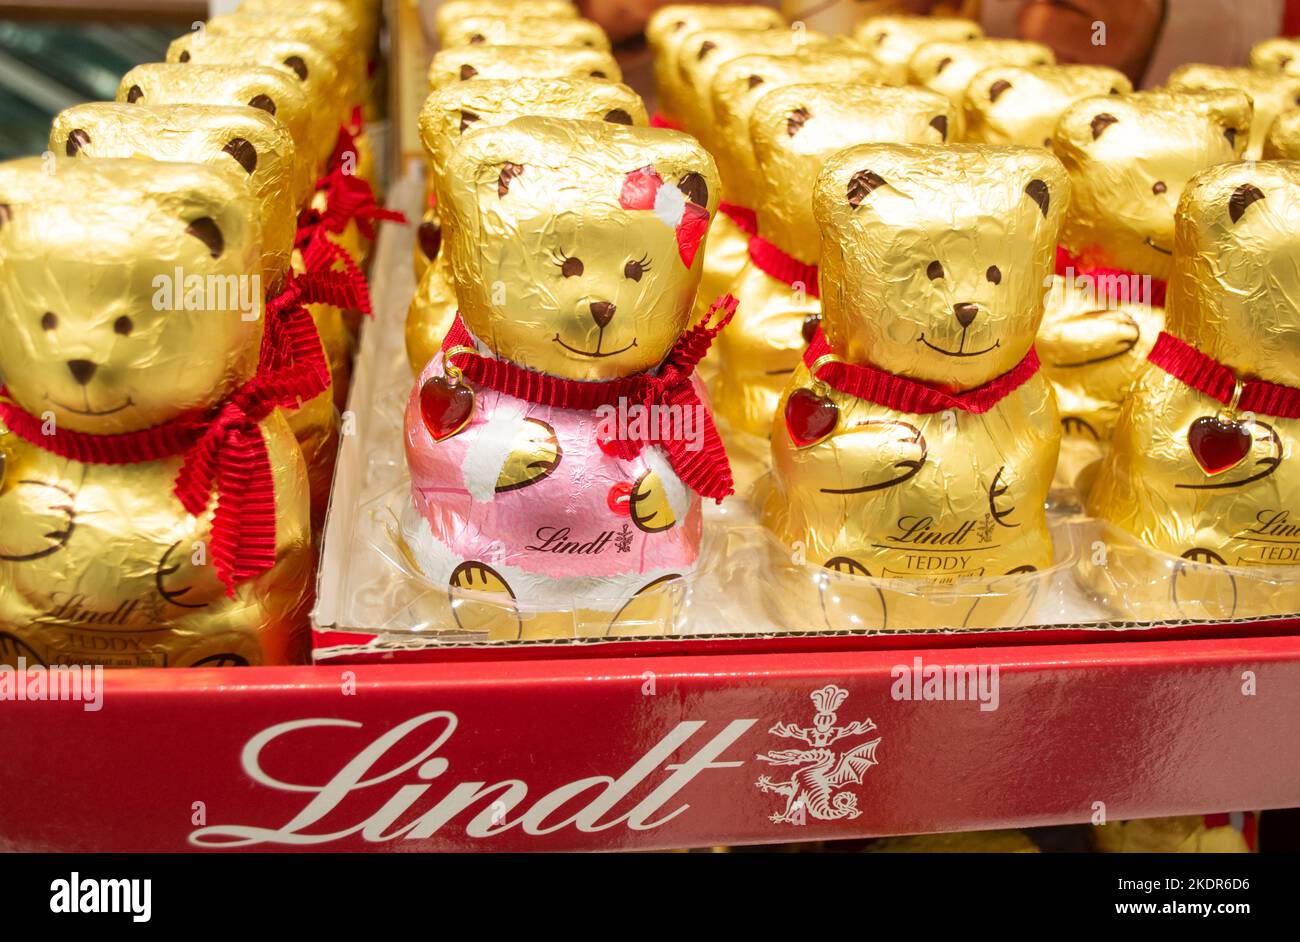 Mosca, Russia, novembre 2020: Gli orsacchiotti al cioccolato Lindt in lamina d'oro e con un pendente a cuore rosso sono venduti in un supermercato. Foto Stock